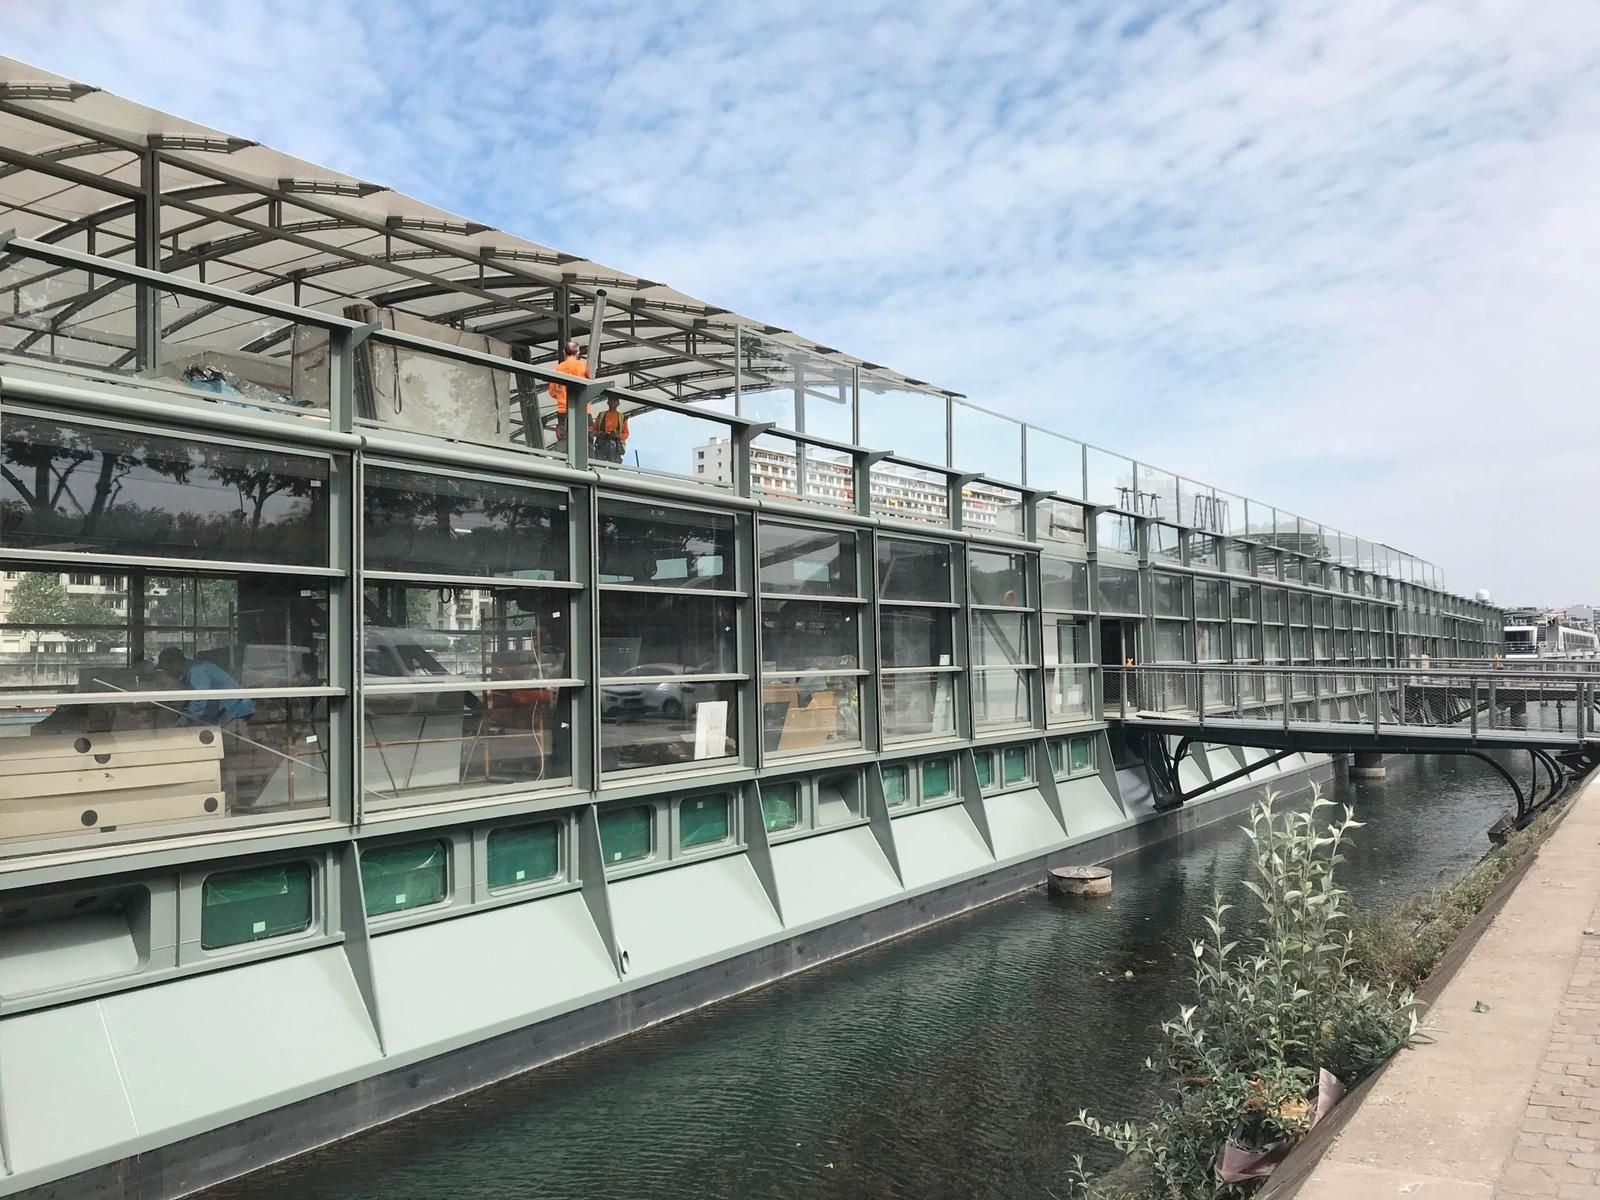 La barge qui fait face au parc André-Citroën (XVe) est encore en plein aménagement. L'ouverture est prévue en juillet 2022, au plus tôt. En attendant, la guinguette que se trouve sur les quais ouvrira dès lundi. DR